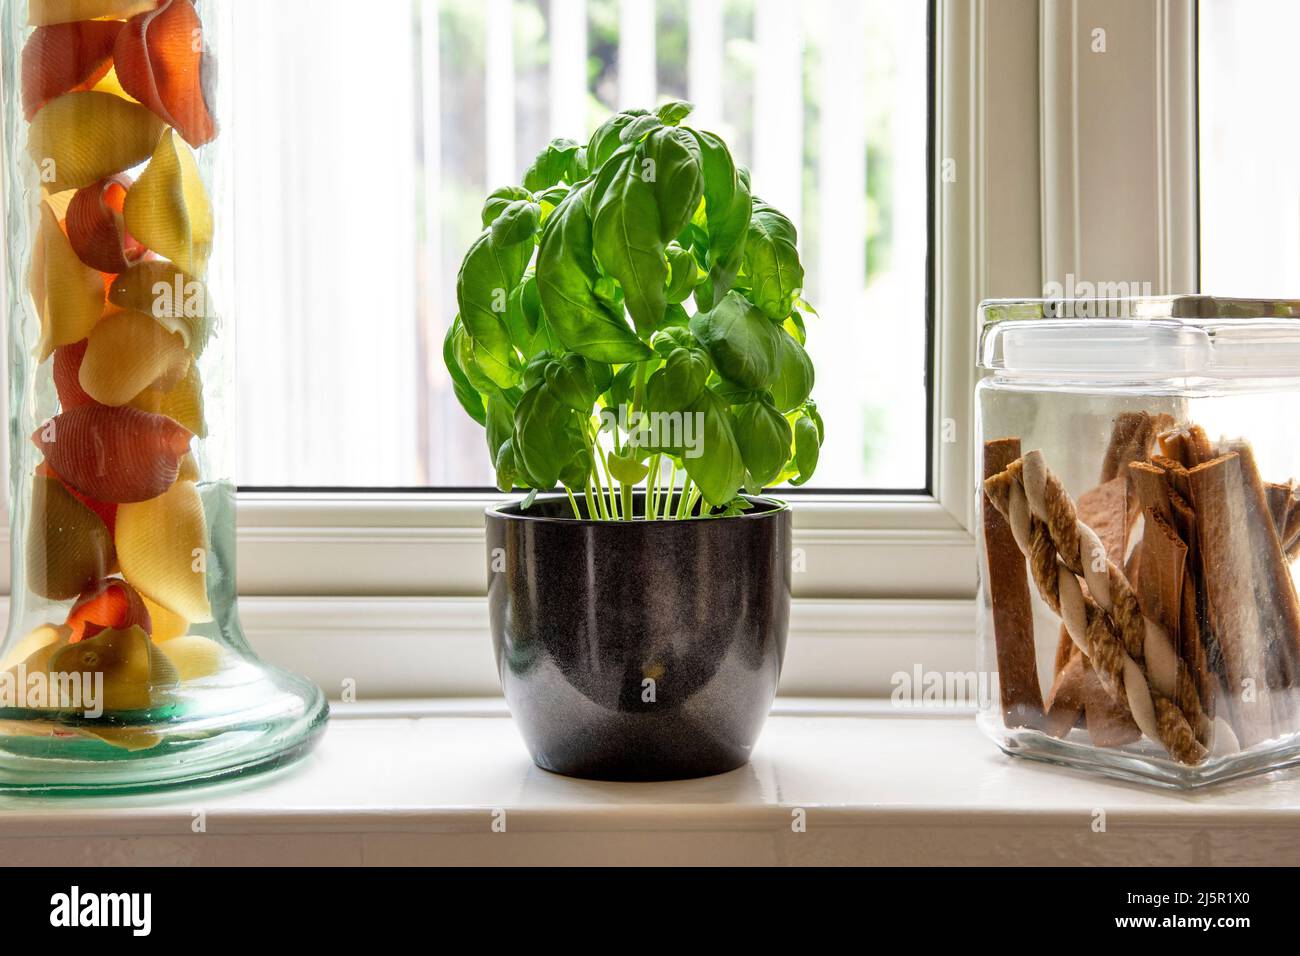 Planta de albahaca que crece en maceta en borde de ventana, al lado de un tarro de pasta y un tarro con guisos de perro Foto de stock